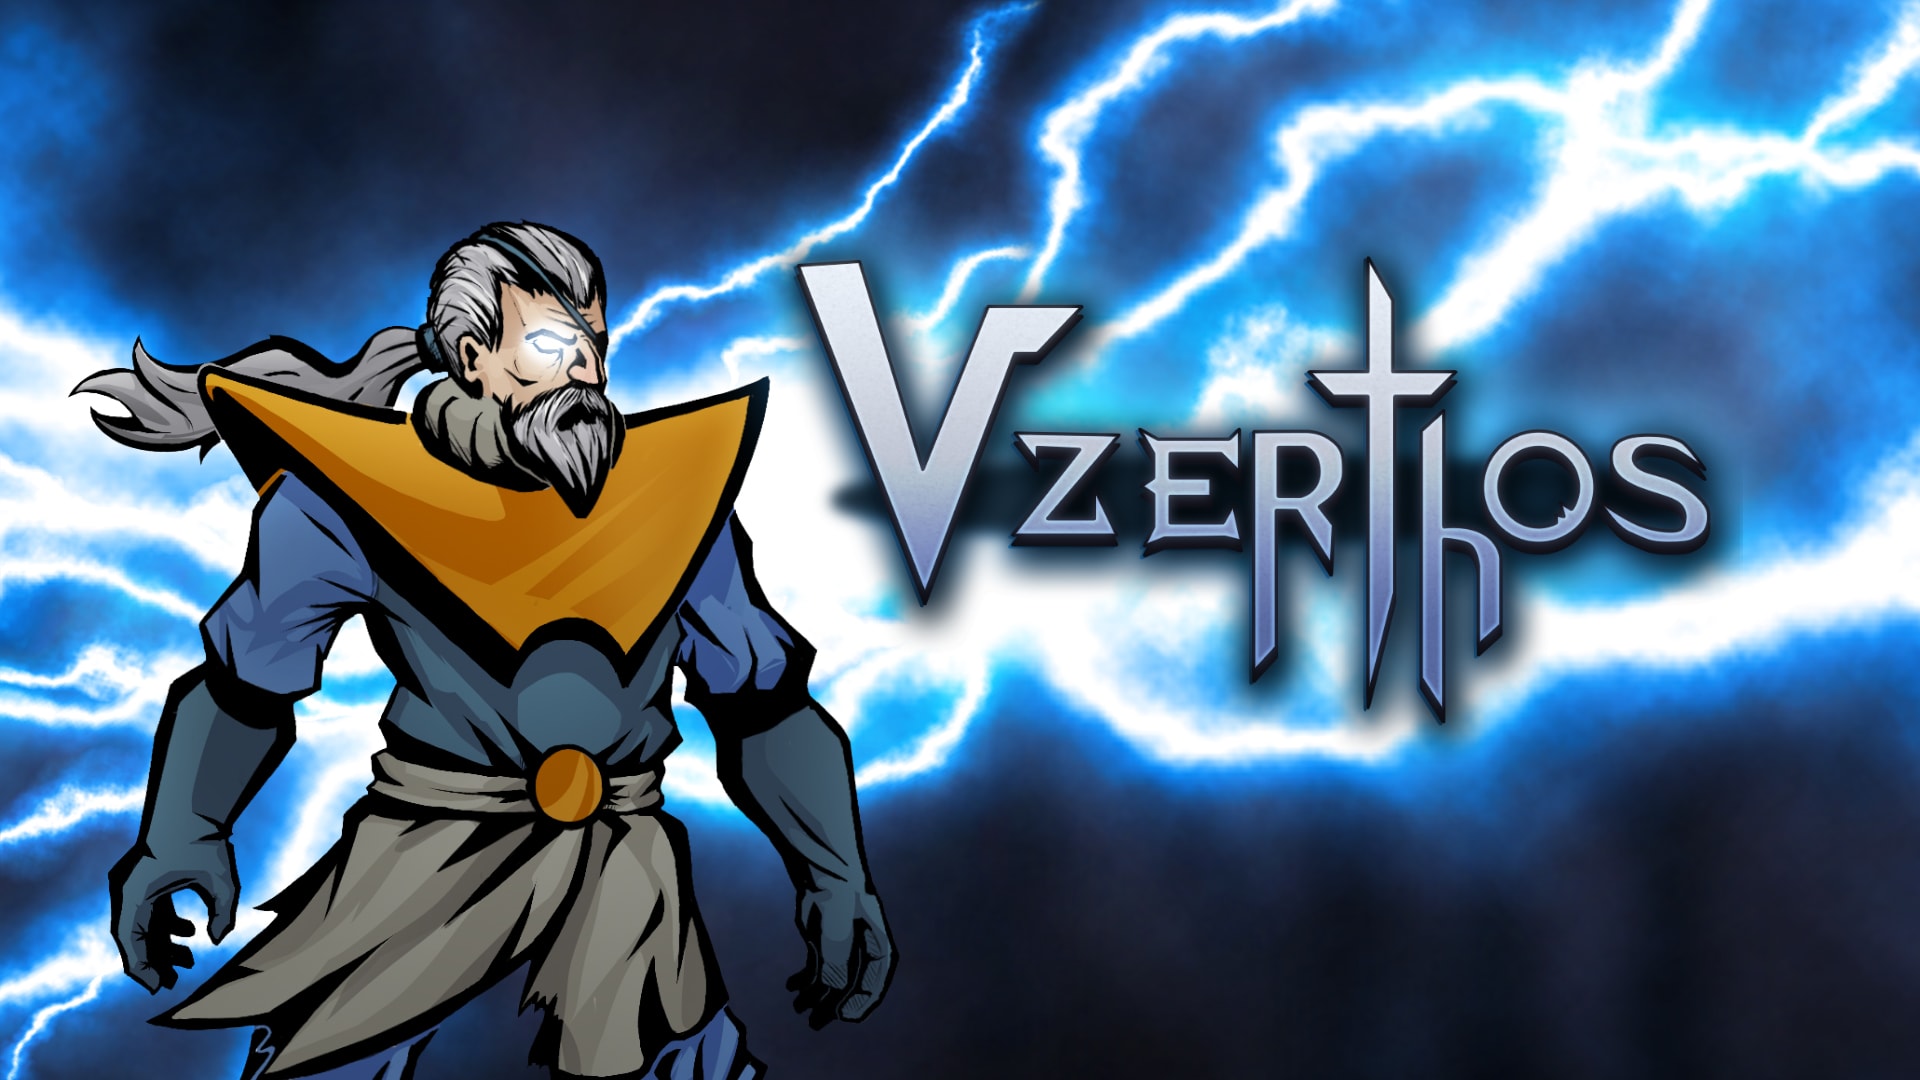 Vzerthos: The Heir of Thunder 1